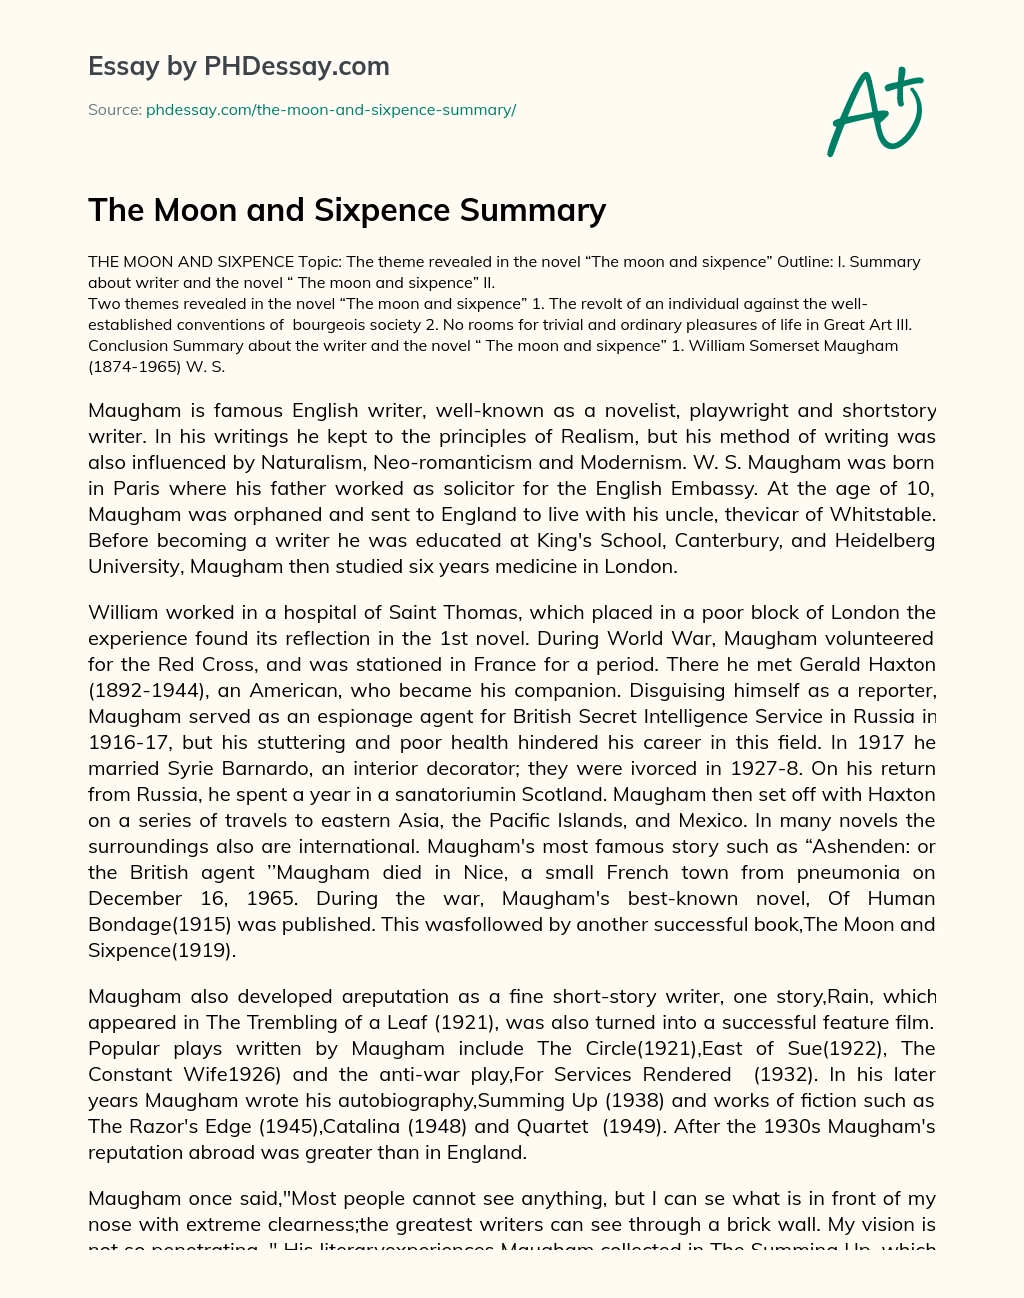 The Moon and Sixpence Summary essay